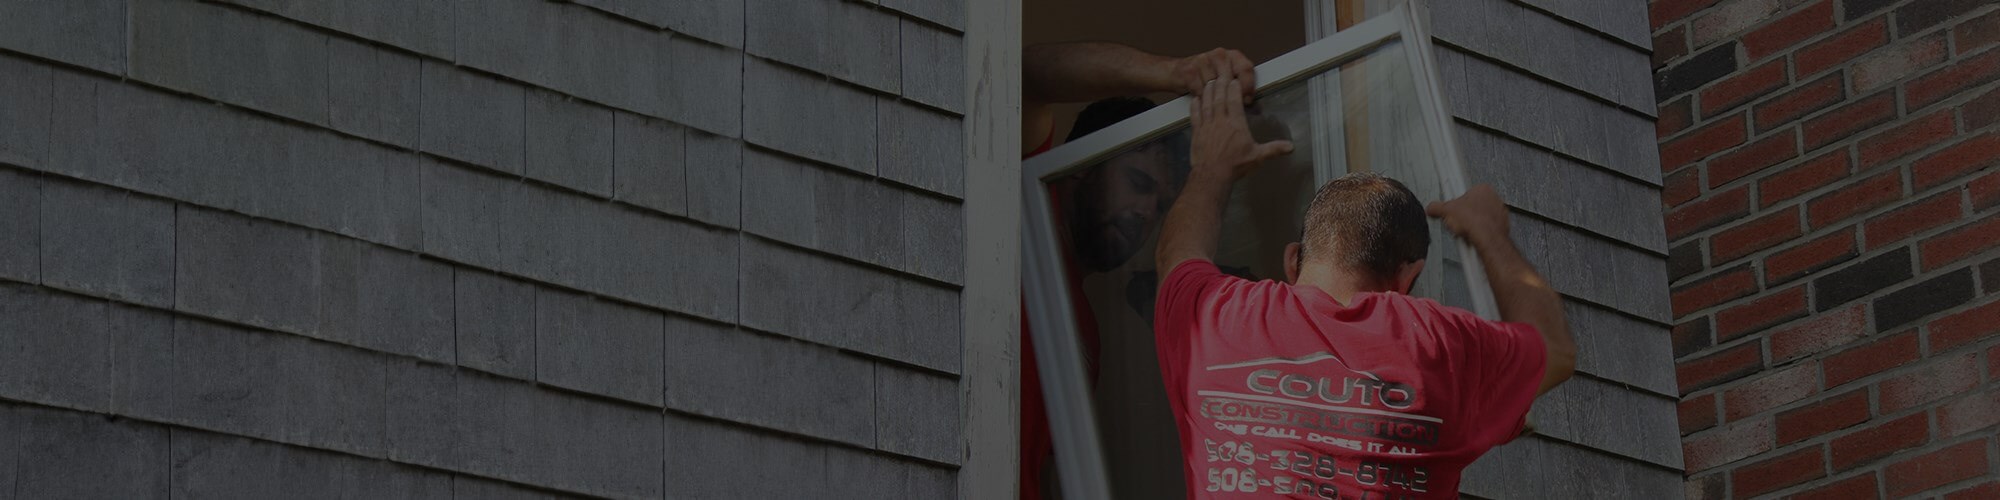 window replacement contractors in Cranston ri